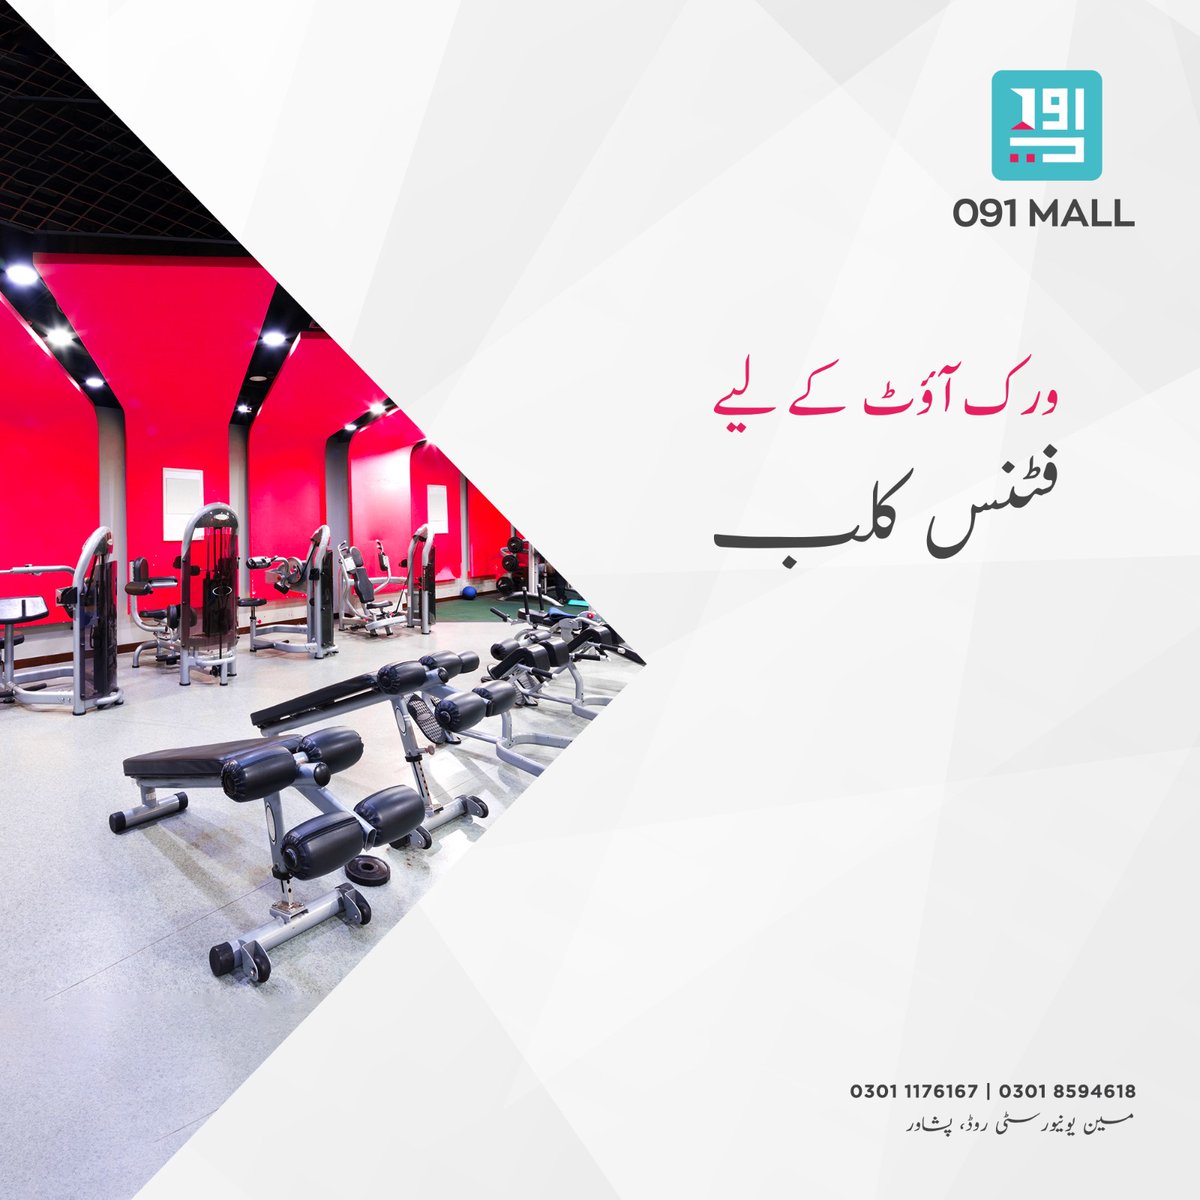 091 مال میں بنایا جارہا ہے جدید ترین ایکیوپمنٹ اور مشینوں سے آراستہ  کلب تاکہ آپ کرسکیں اس ہائی ٹیک جم میں ورک آوٹ وہ بھی  آرام دہ اور پرسکون ماحول میں۔

#091Mall #ShoppingMall #UniversityRoadPeshawar #peshawar #KPK